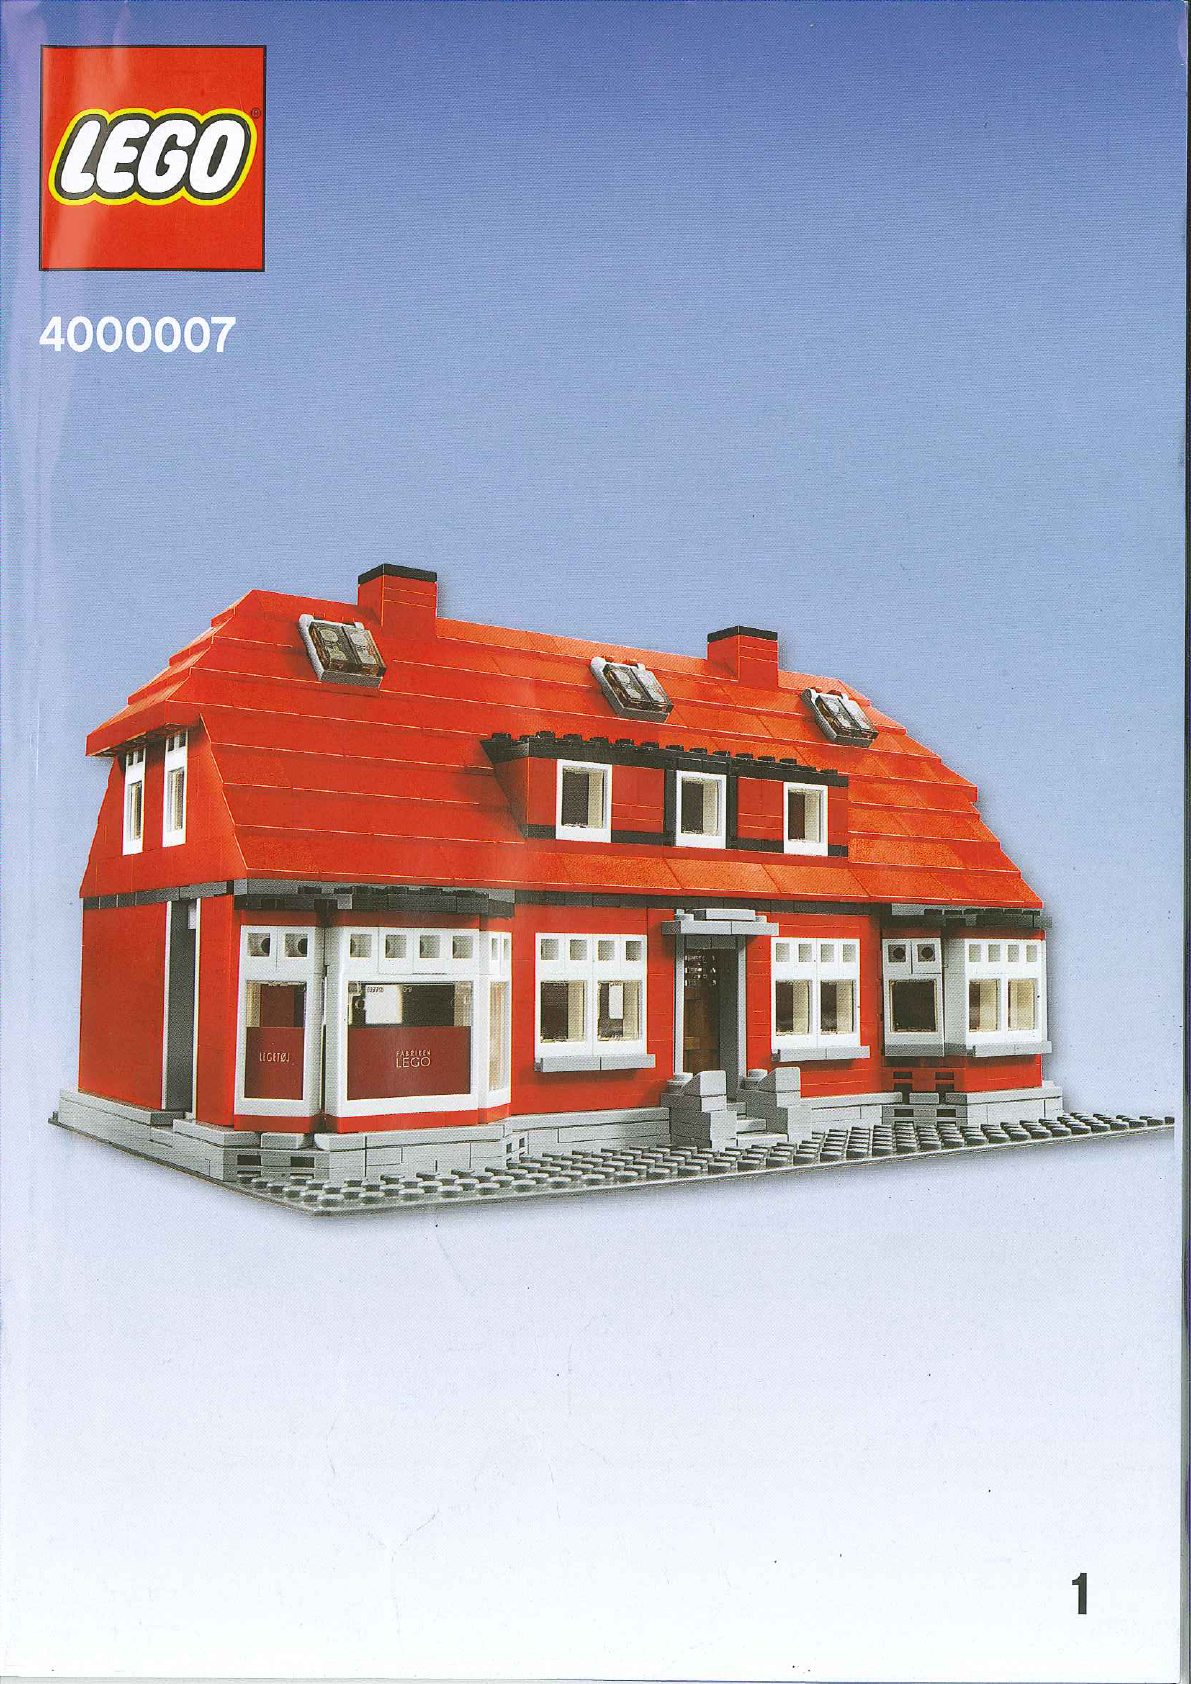 説明書 レゴ set 4000007 アーキテクチャー オレ・カーク レゴ創業者の家